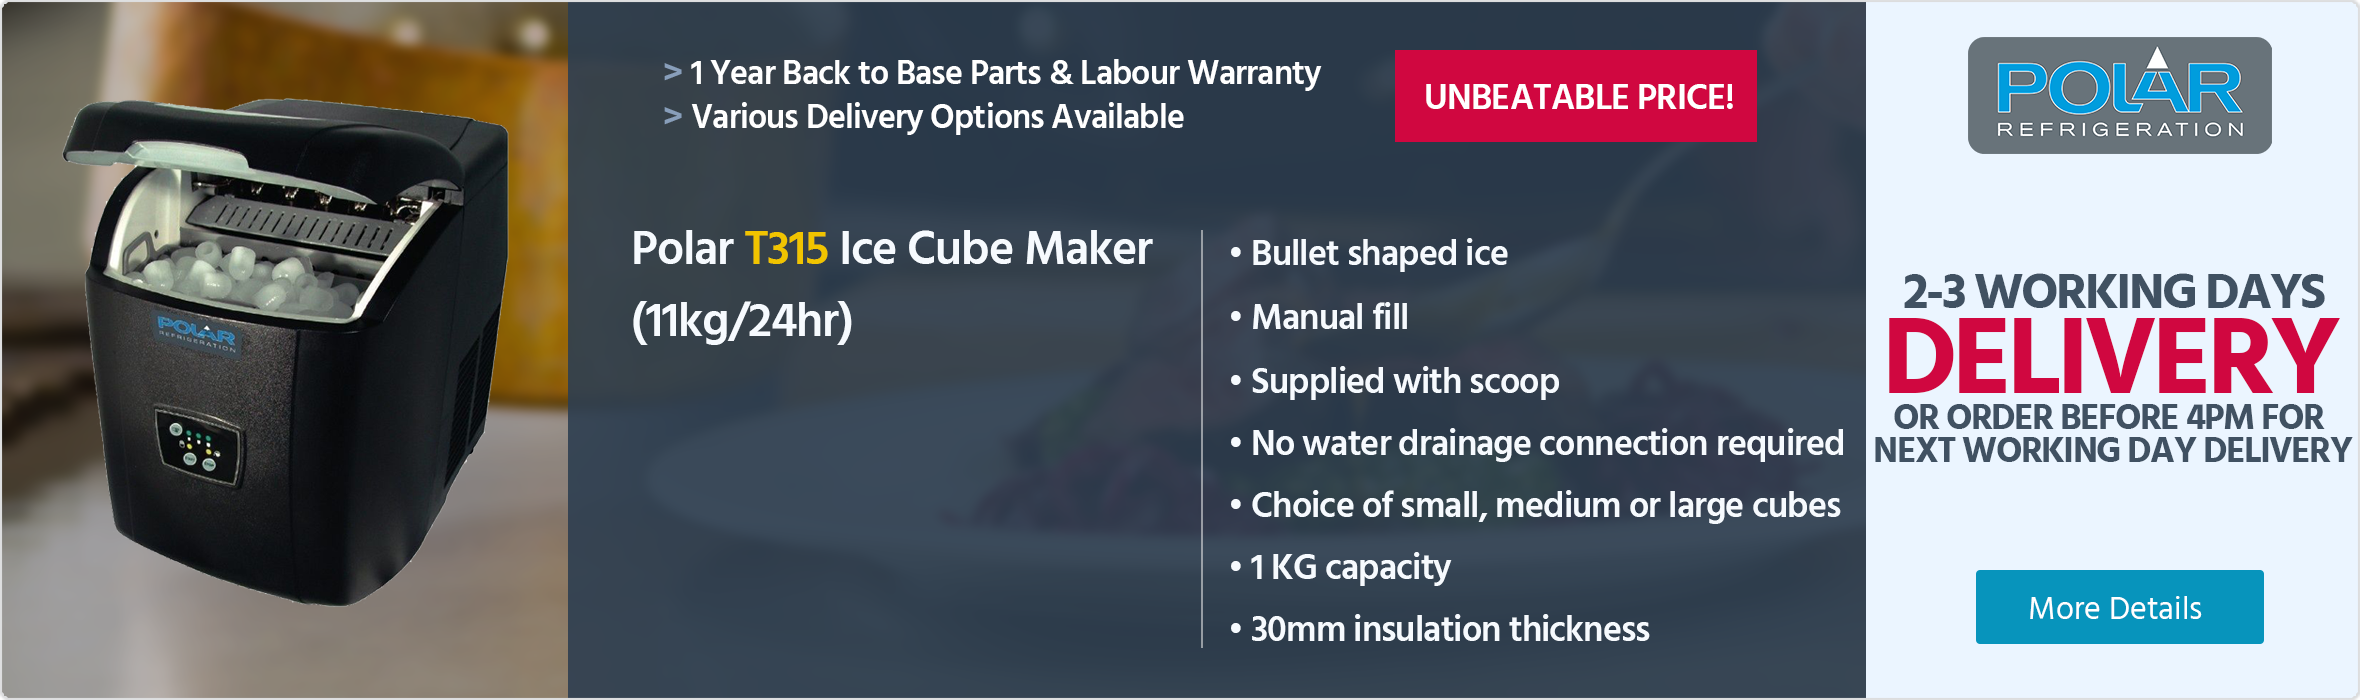 Polar T315 Ice Cube Maker (11kg/24hr)